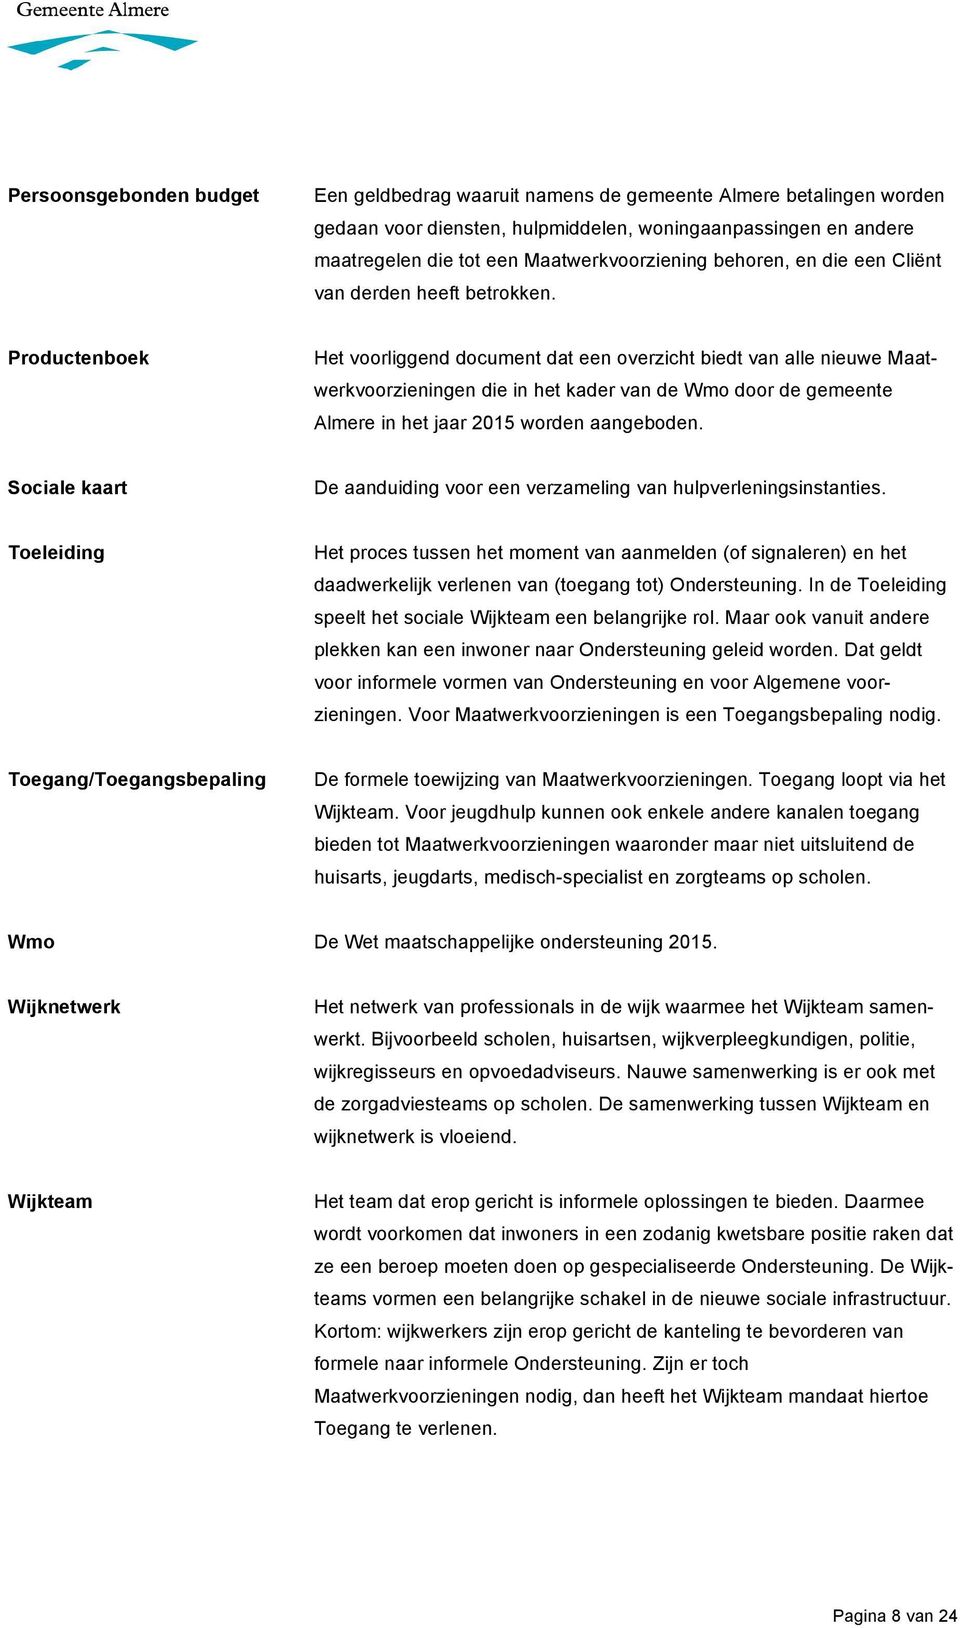 Productenboek Het voorliggend document dat een overzicht biedt van alle nieuwe Maatwerkvoorzieningen die in het kader van de Wmo door de gemeente Almere in het jaar 2015 worden aangeboden.